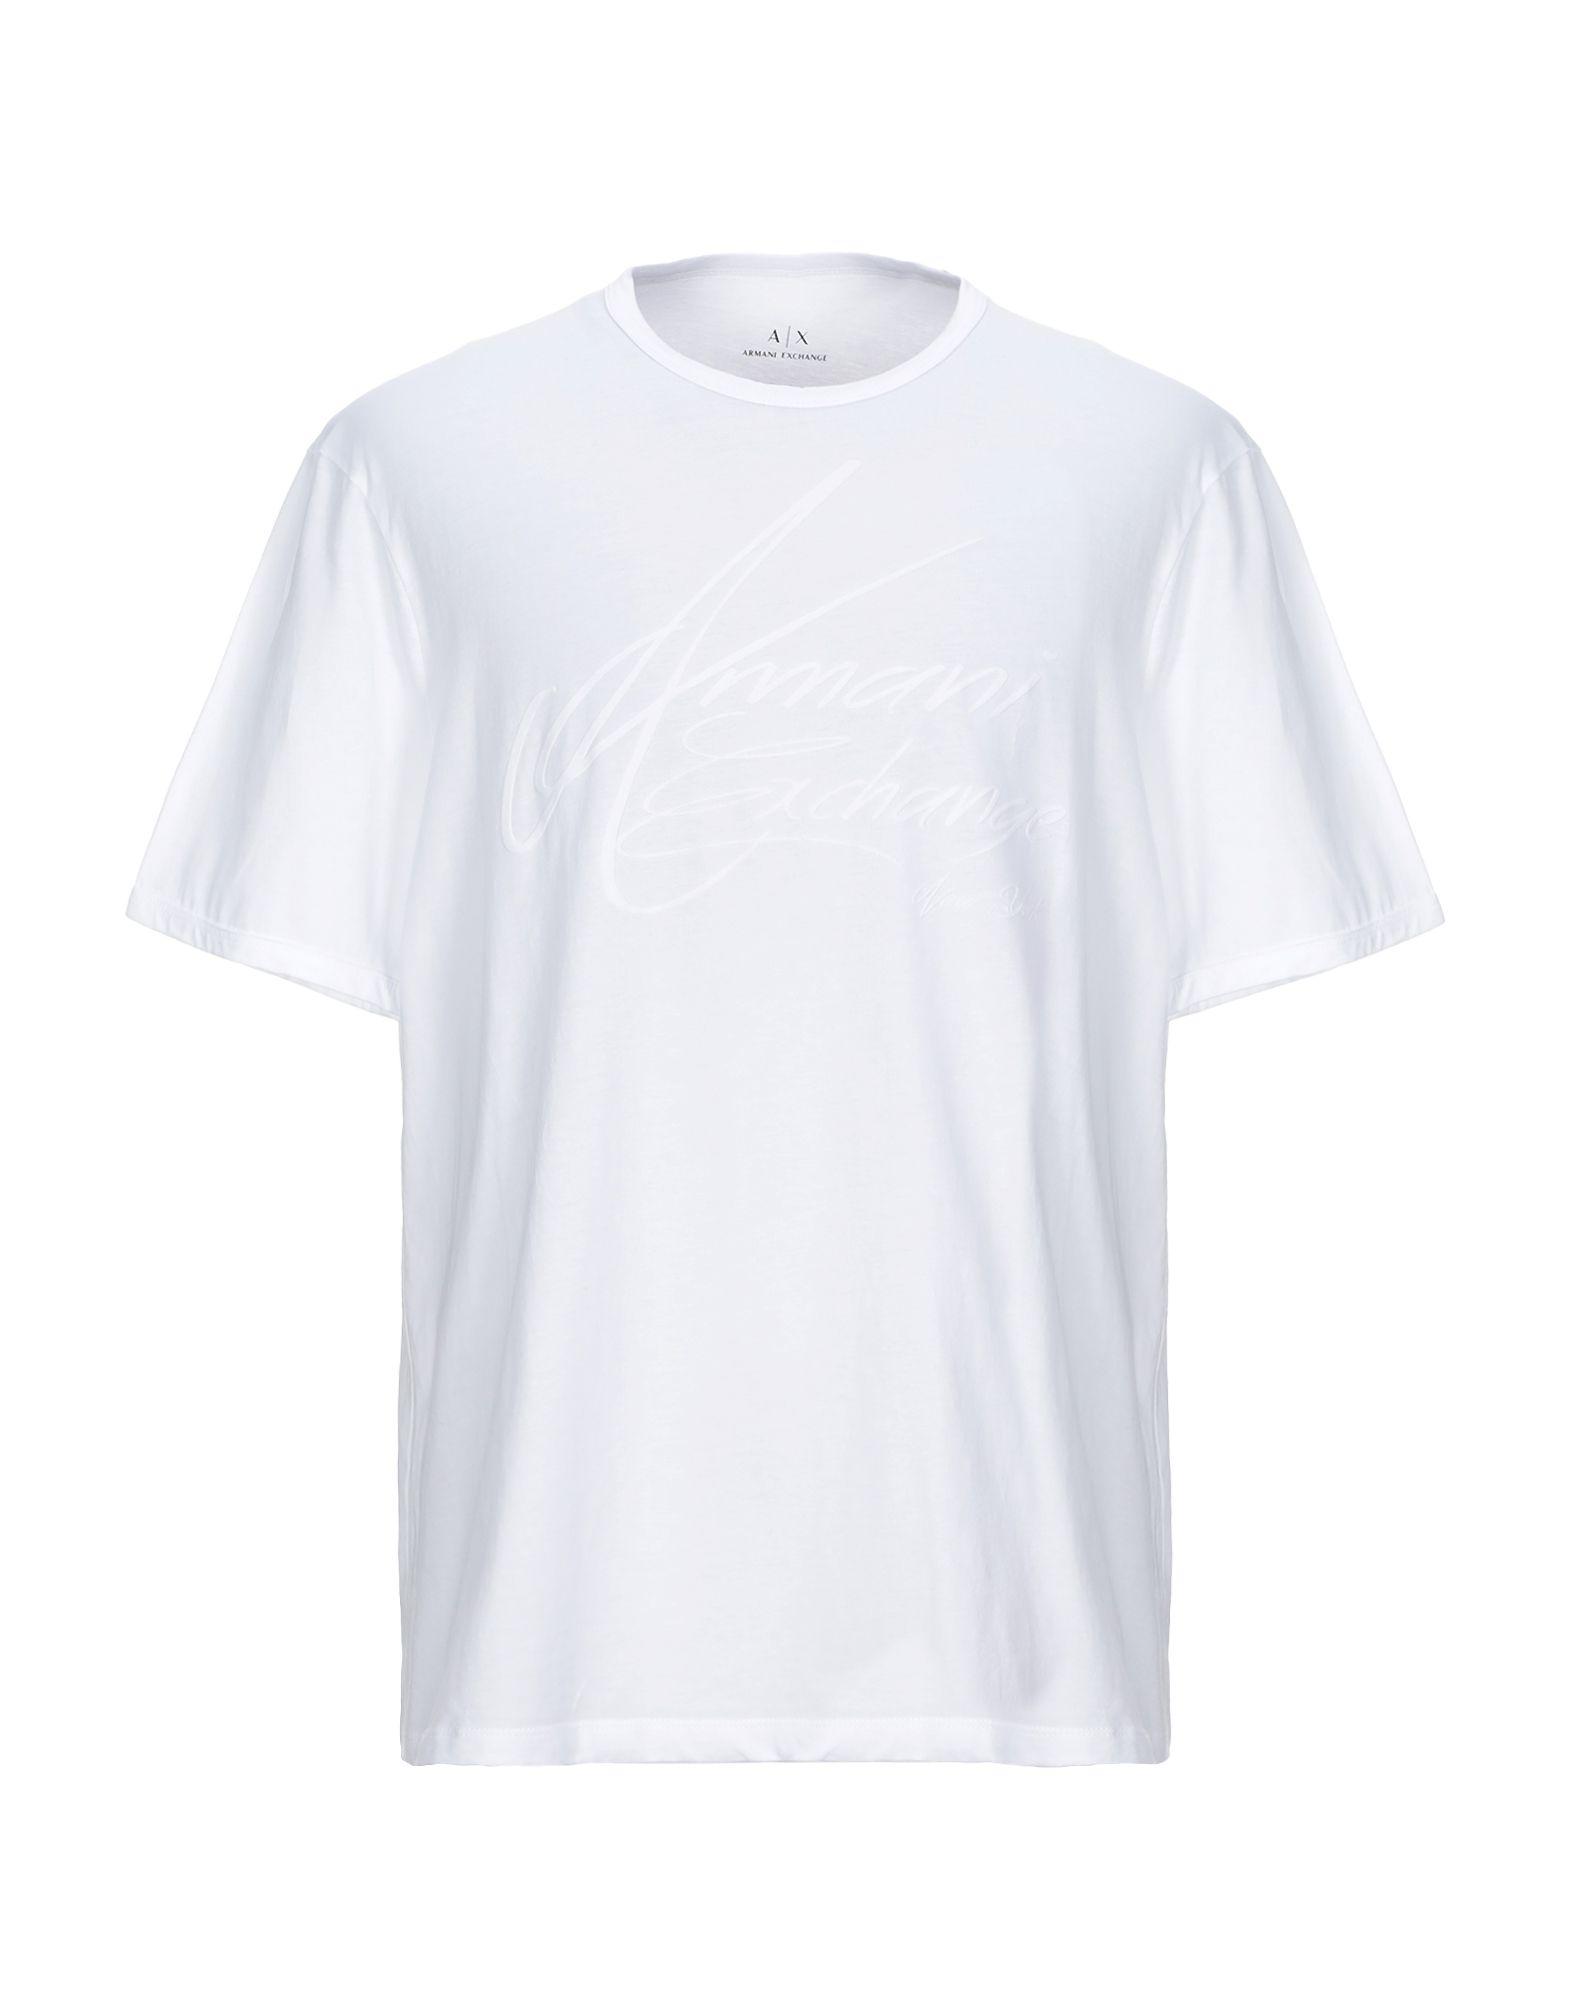 Armani Exchange Velvet T-shirt in White for Men - Lyst